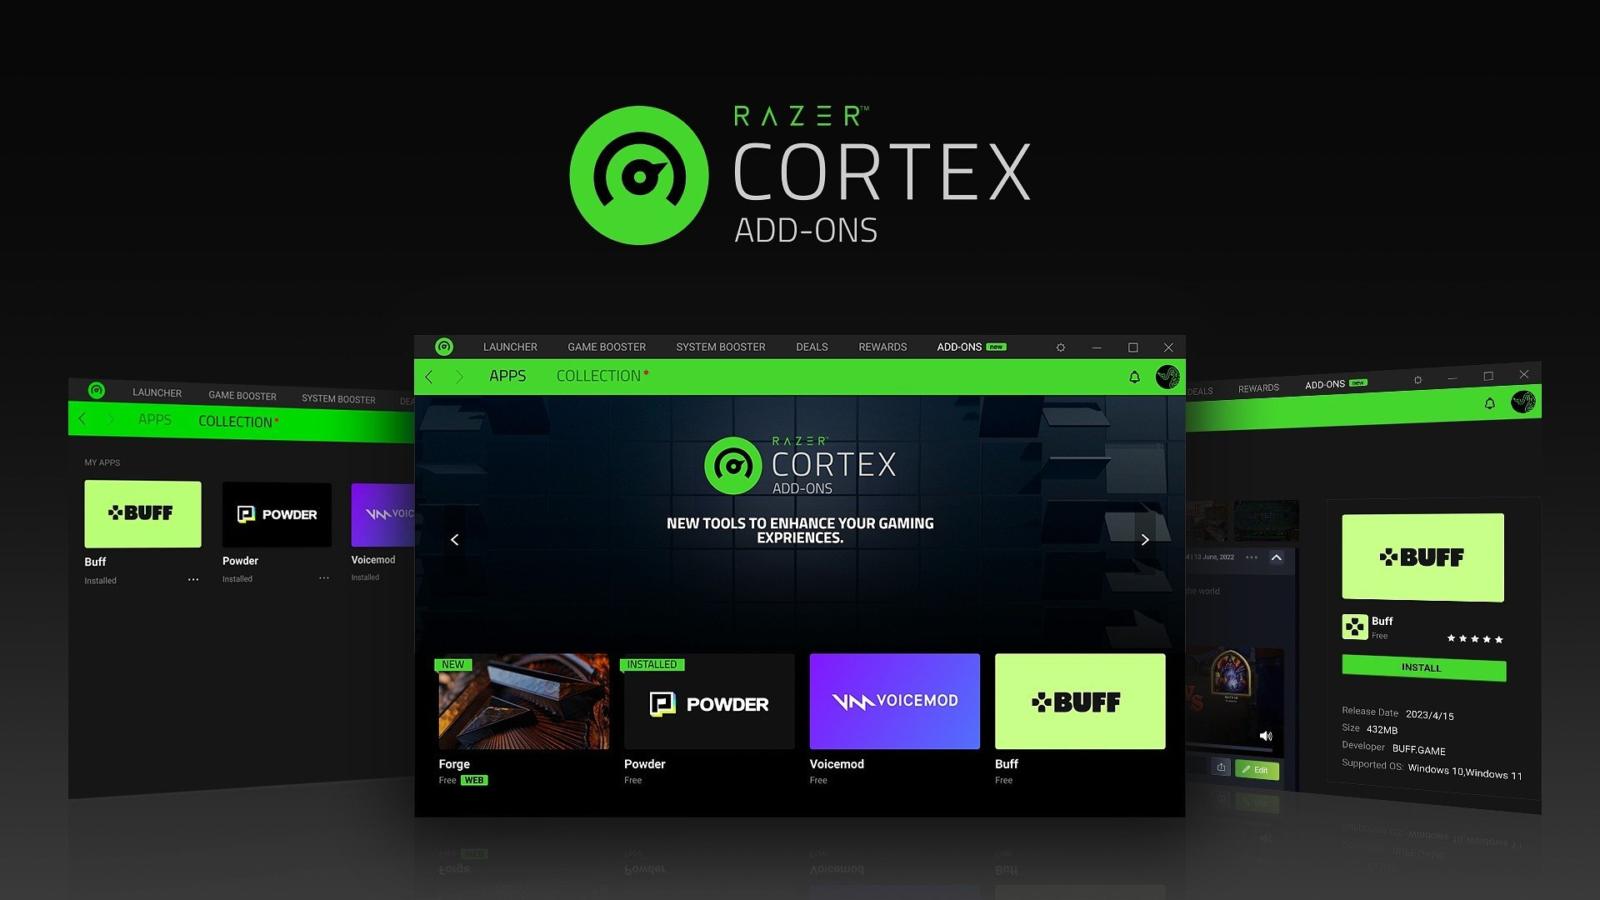 Razer ogłasza nową funkcję: Razer Cortex: Add-Ons - dodatki, które wzniosą gaming na wyższy poziom